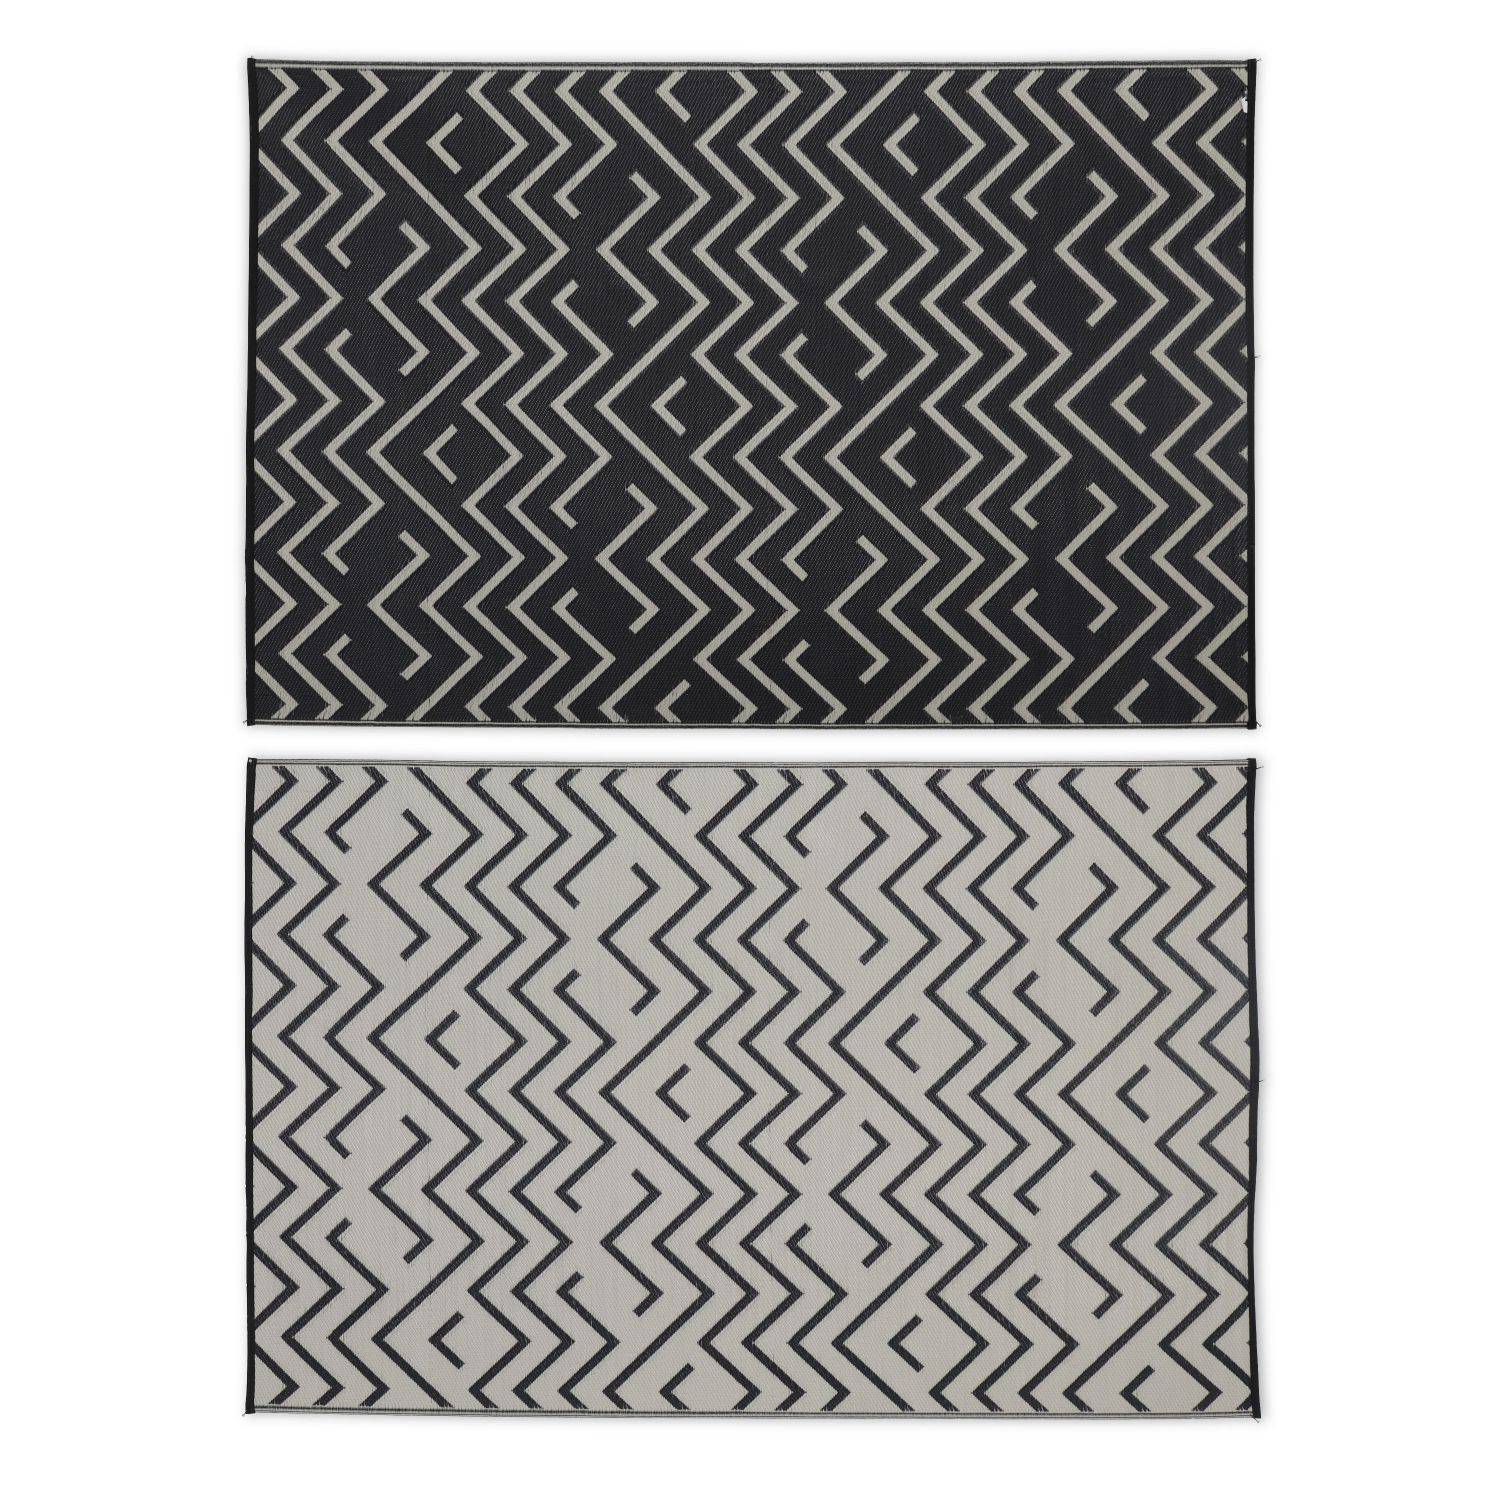 Tappeto per esterni 180x270cm SYDNEY - Rettangolare, motivo a onde nero / beige, jacquard, reversibile, interno / esterno Photo2